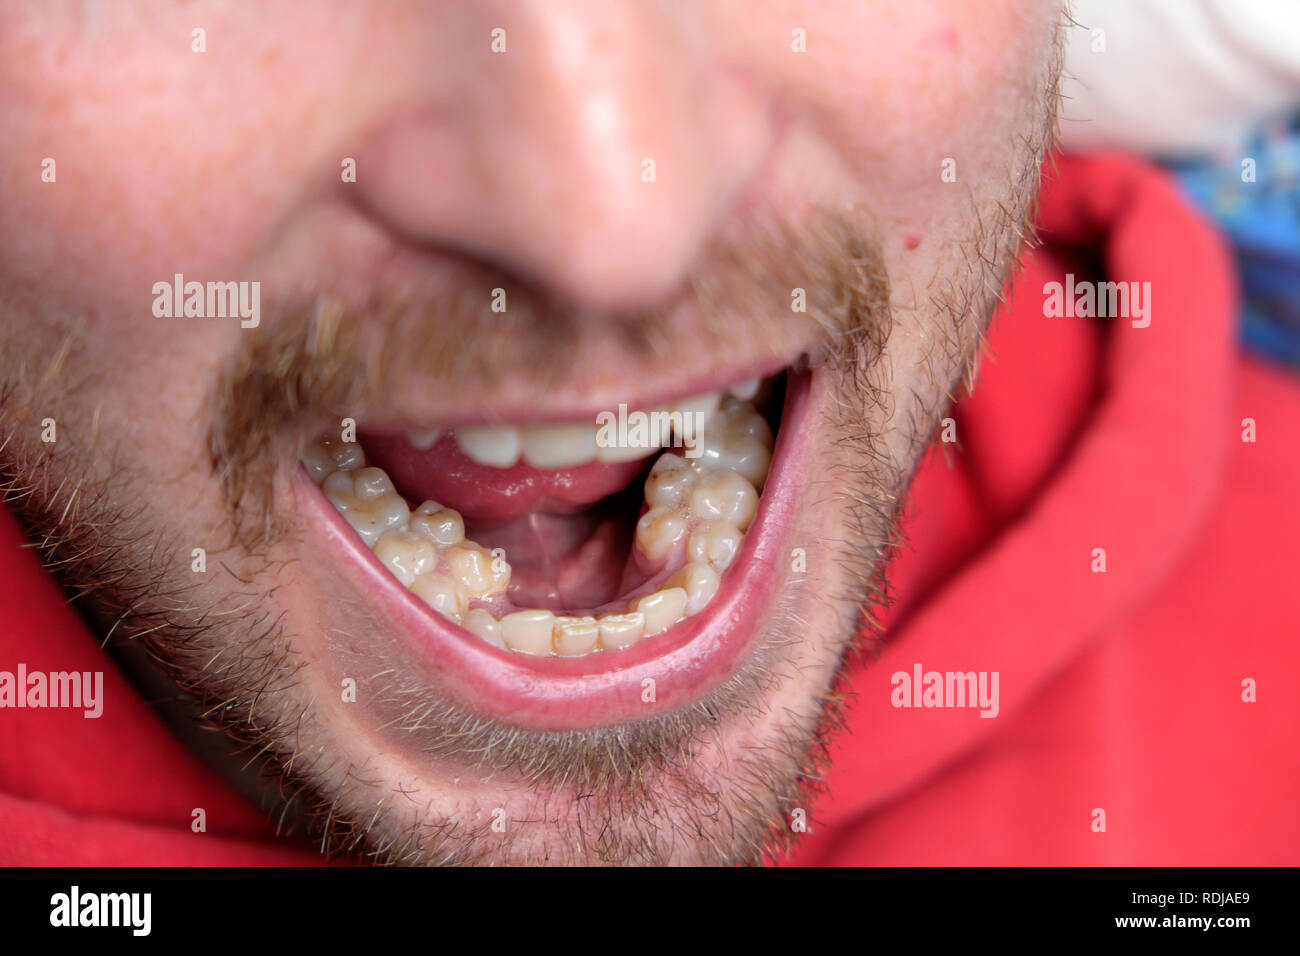 Un jeune homme avec la bouche ouverte montrant son jeu supplémentaire de prémolaires molaires dents prémolaires surnuméraires au Pays de Galles UK KATHY DEWITT Banque D'Images